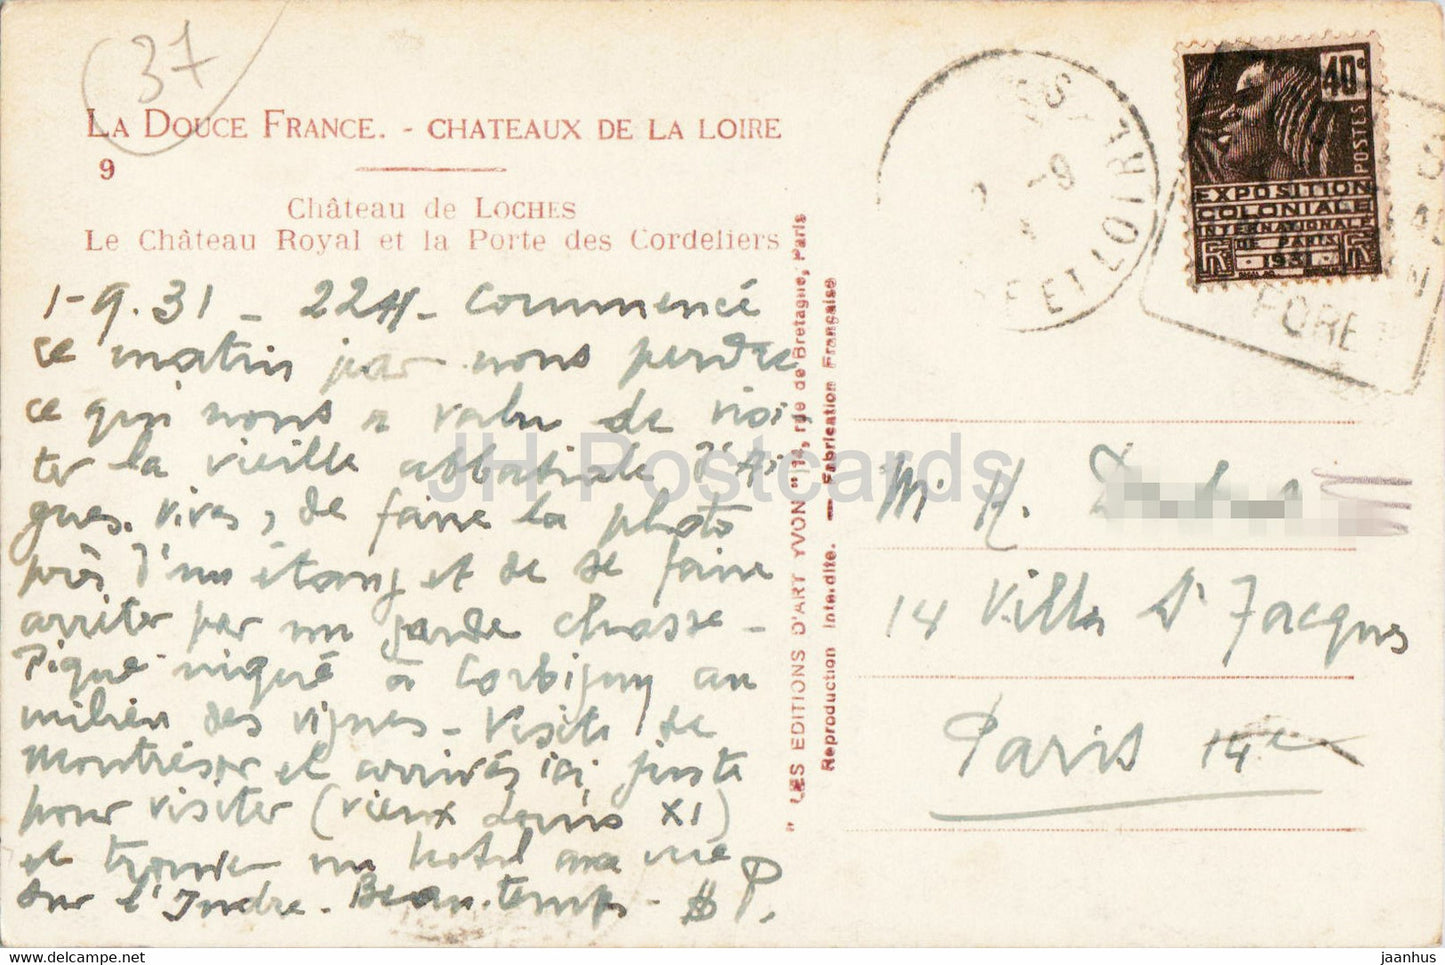 Chateau de Loches - Le Chateau Royal et la Porte des Cordeliers - 9 - alte Postkarte - 1931 - Frankreich - gebraucht